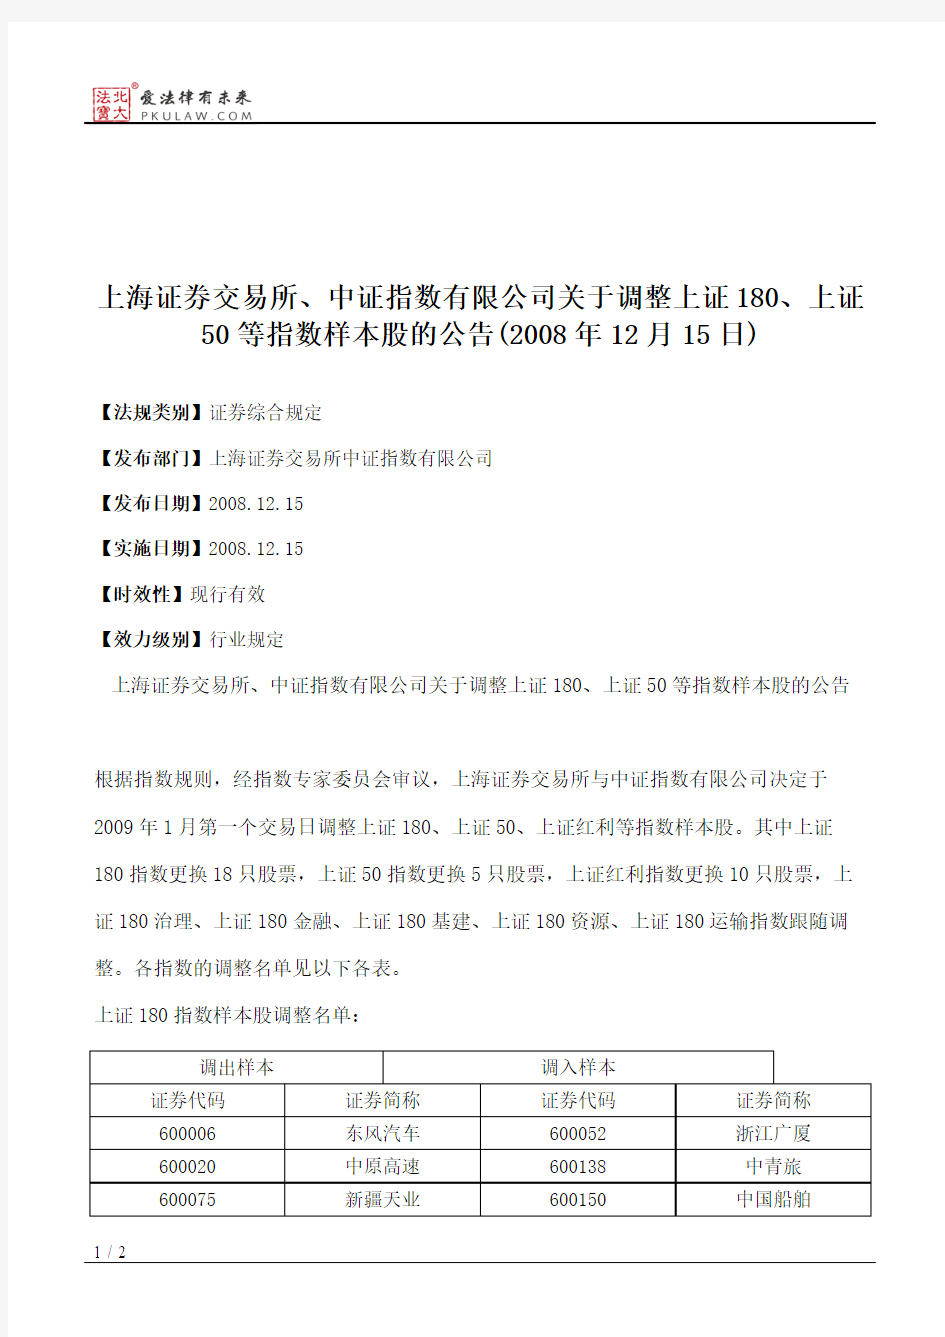 上海证券交易所、中证指数有限公司关于调整上证180、上证50等指数